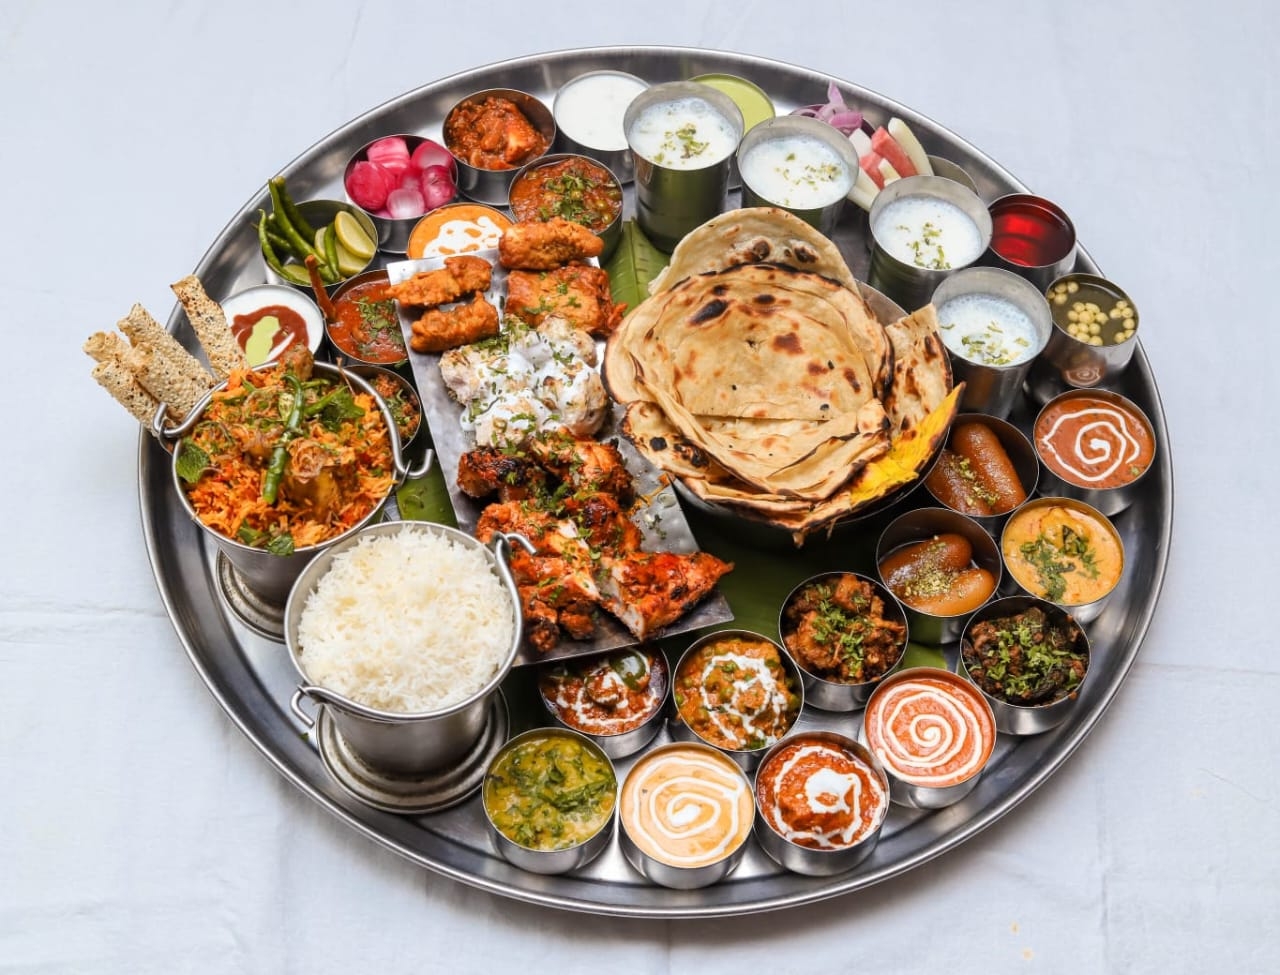 पीएम मोदी के जन्मदिन के बेहद खास बनाएगा दिल्ली का ये रेस्टोरेंट ग्राहकों को परोसेगा ’56 इंच की थाली’